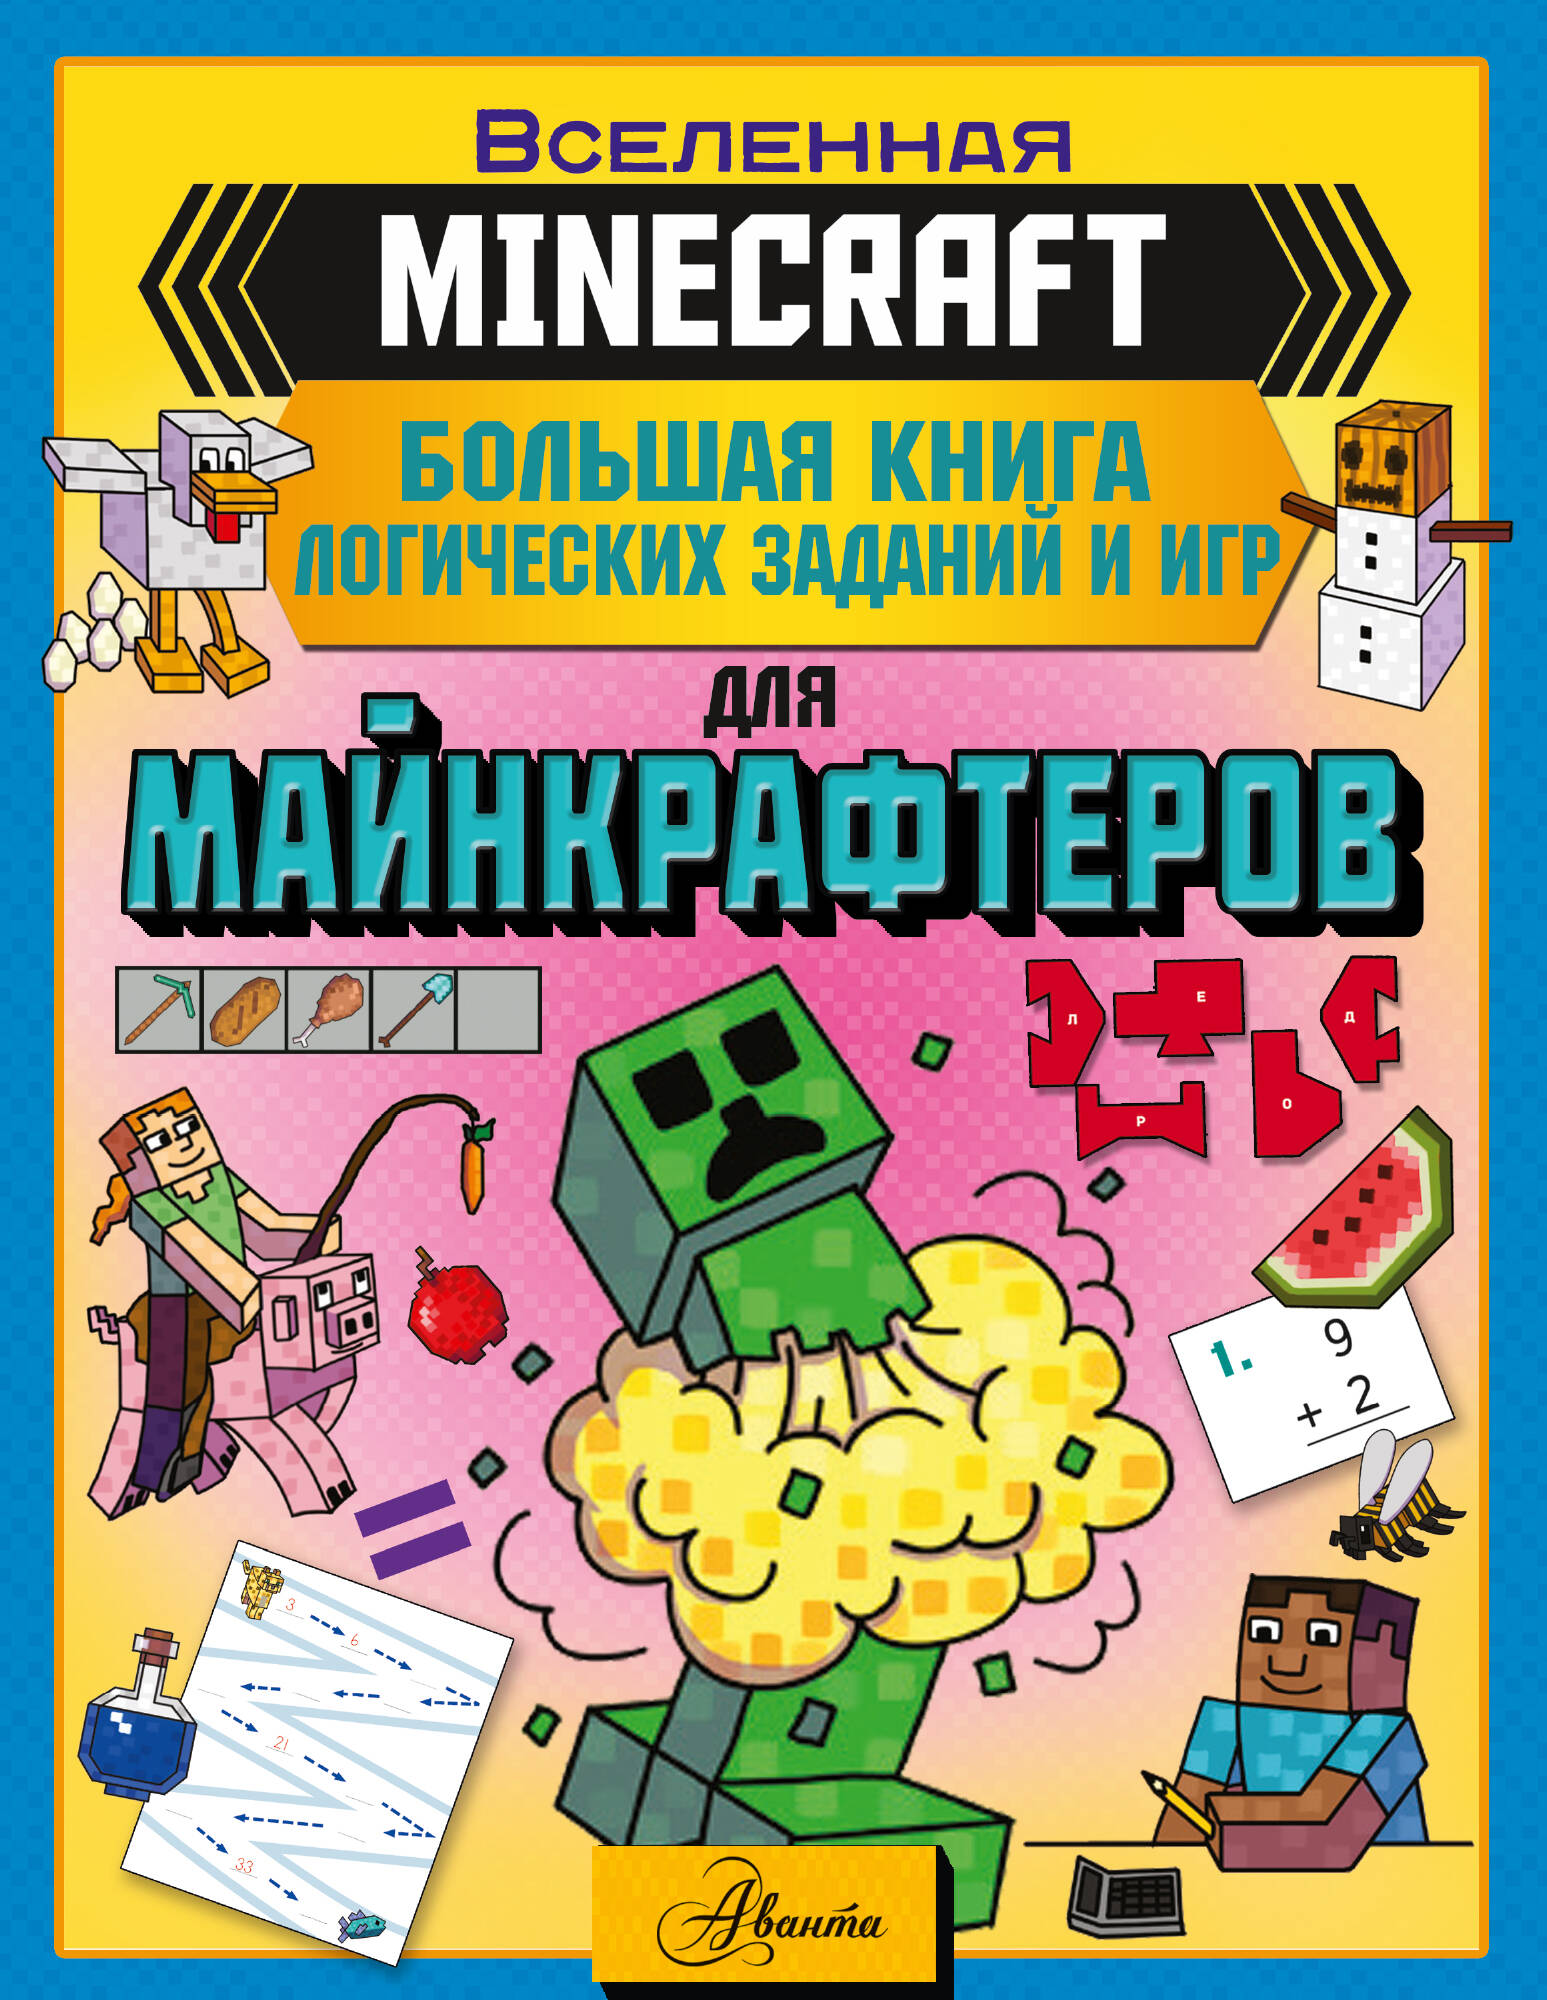 Брэк Аманда MINECRAFT. Большая книга логических заданий и игр для майнкрафтеров